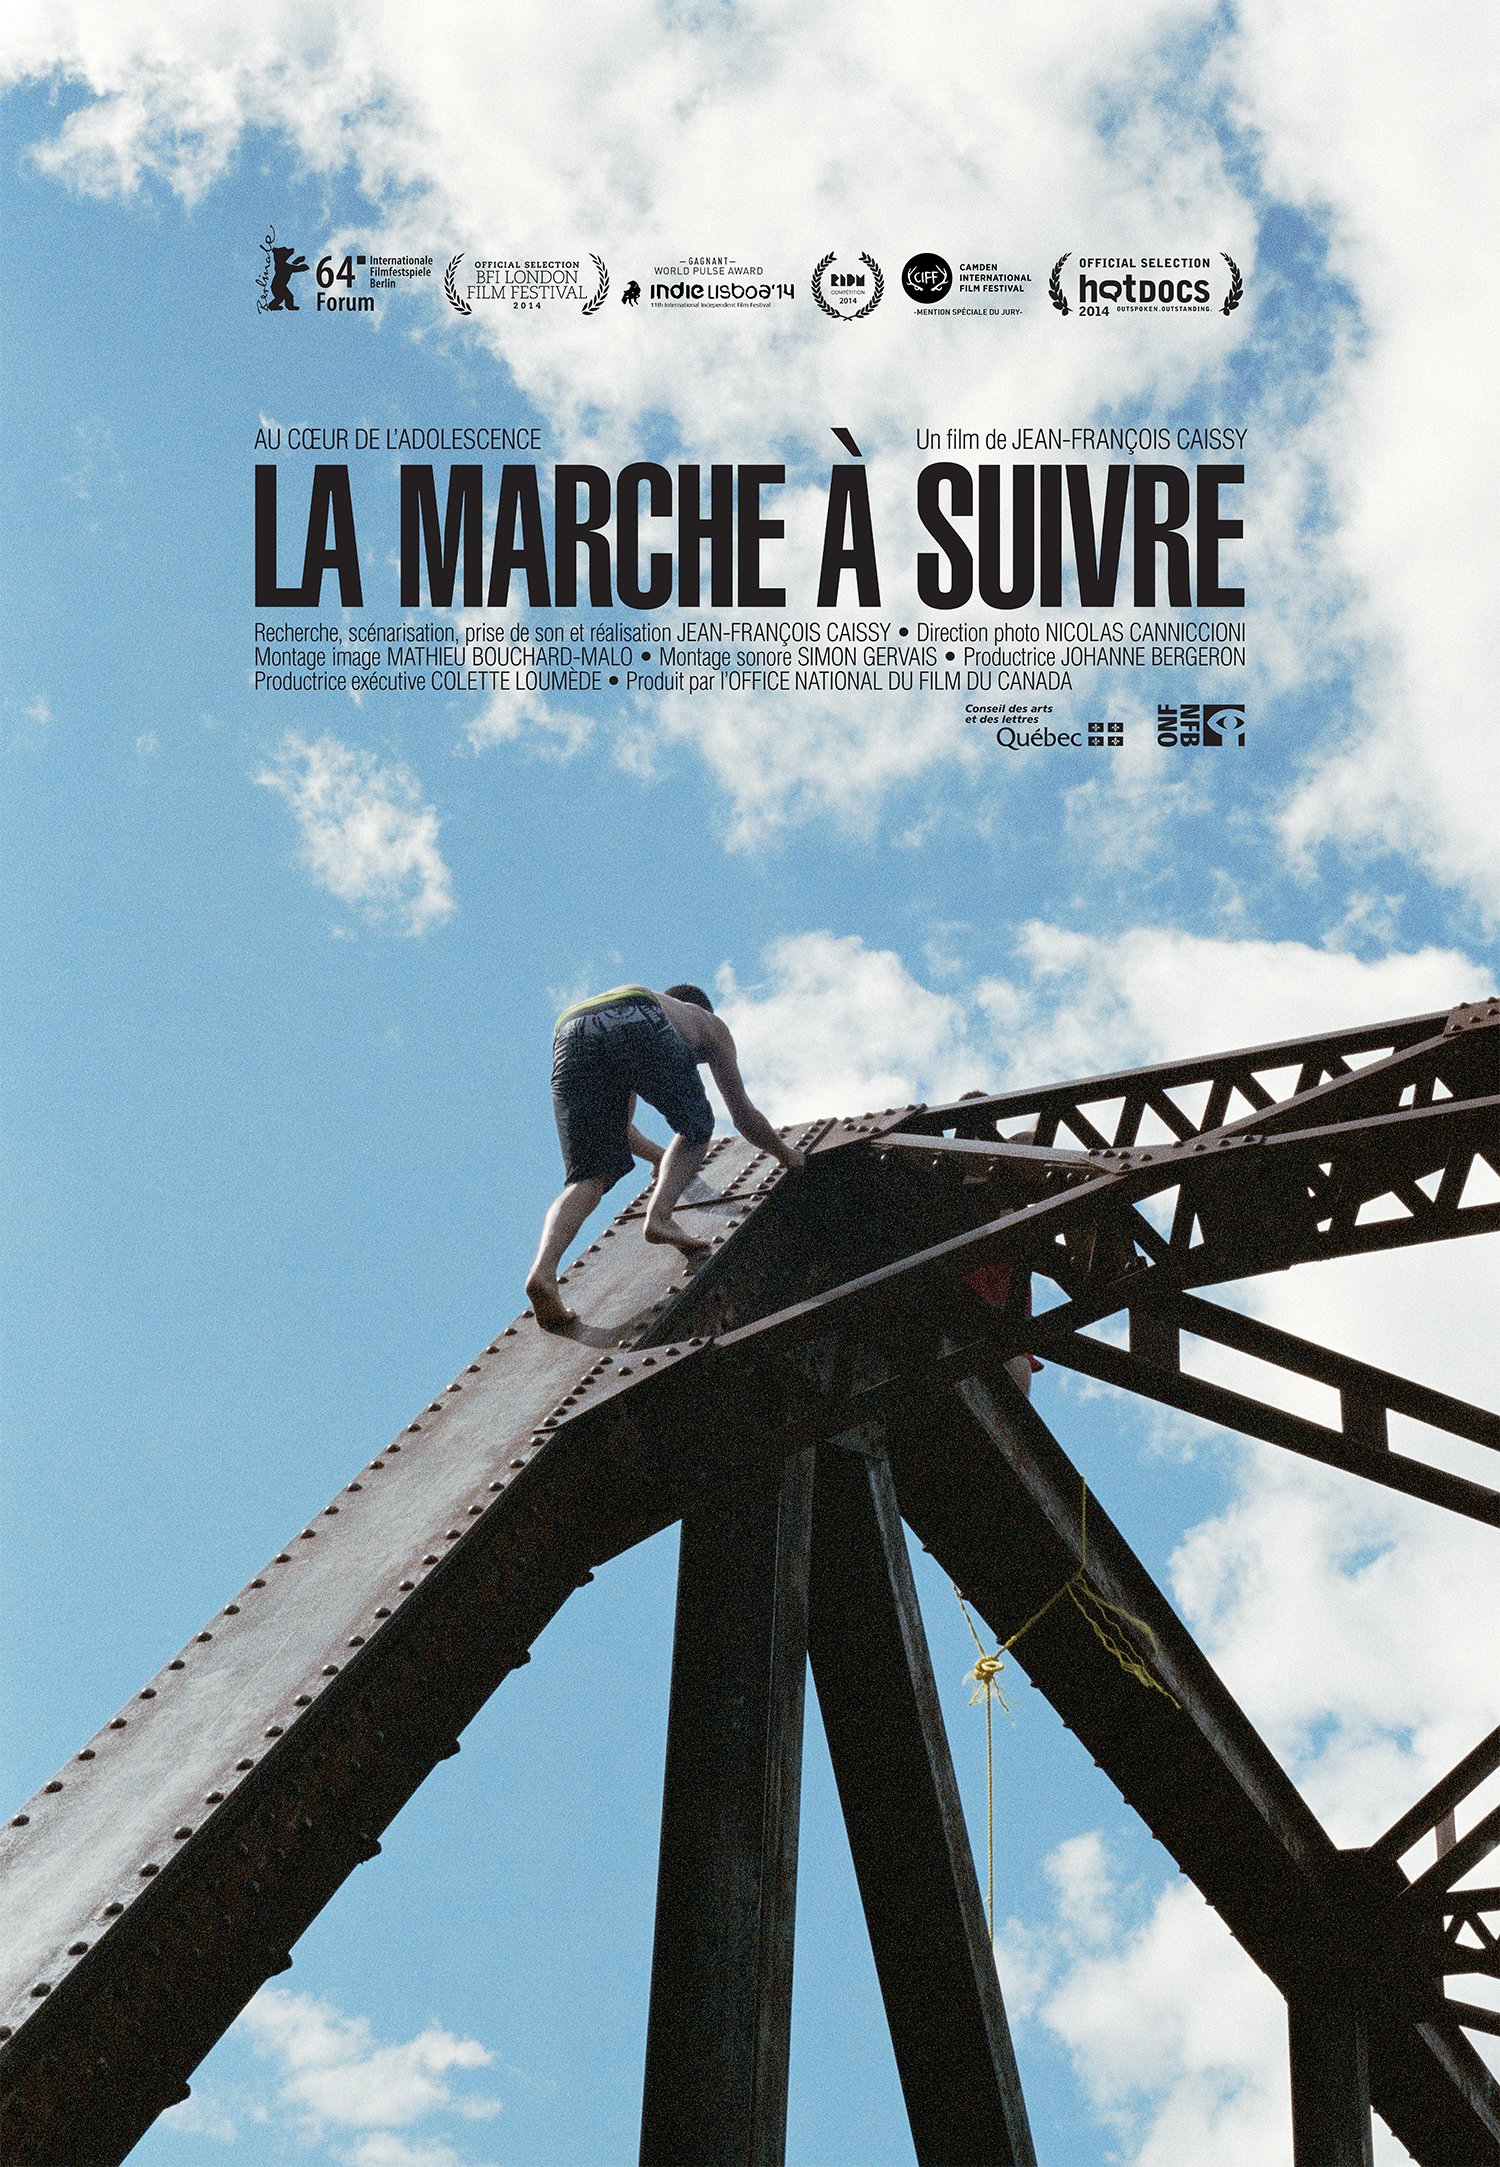 Poster of the movie La Marche à suivre